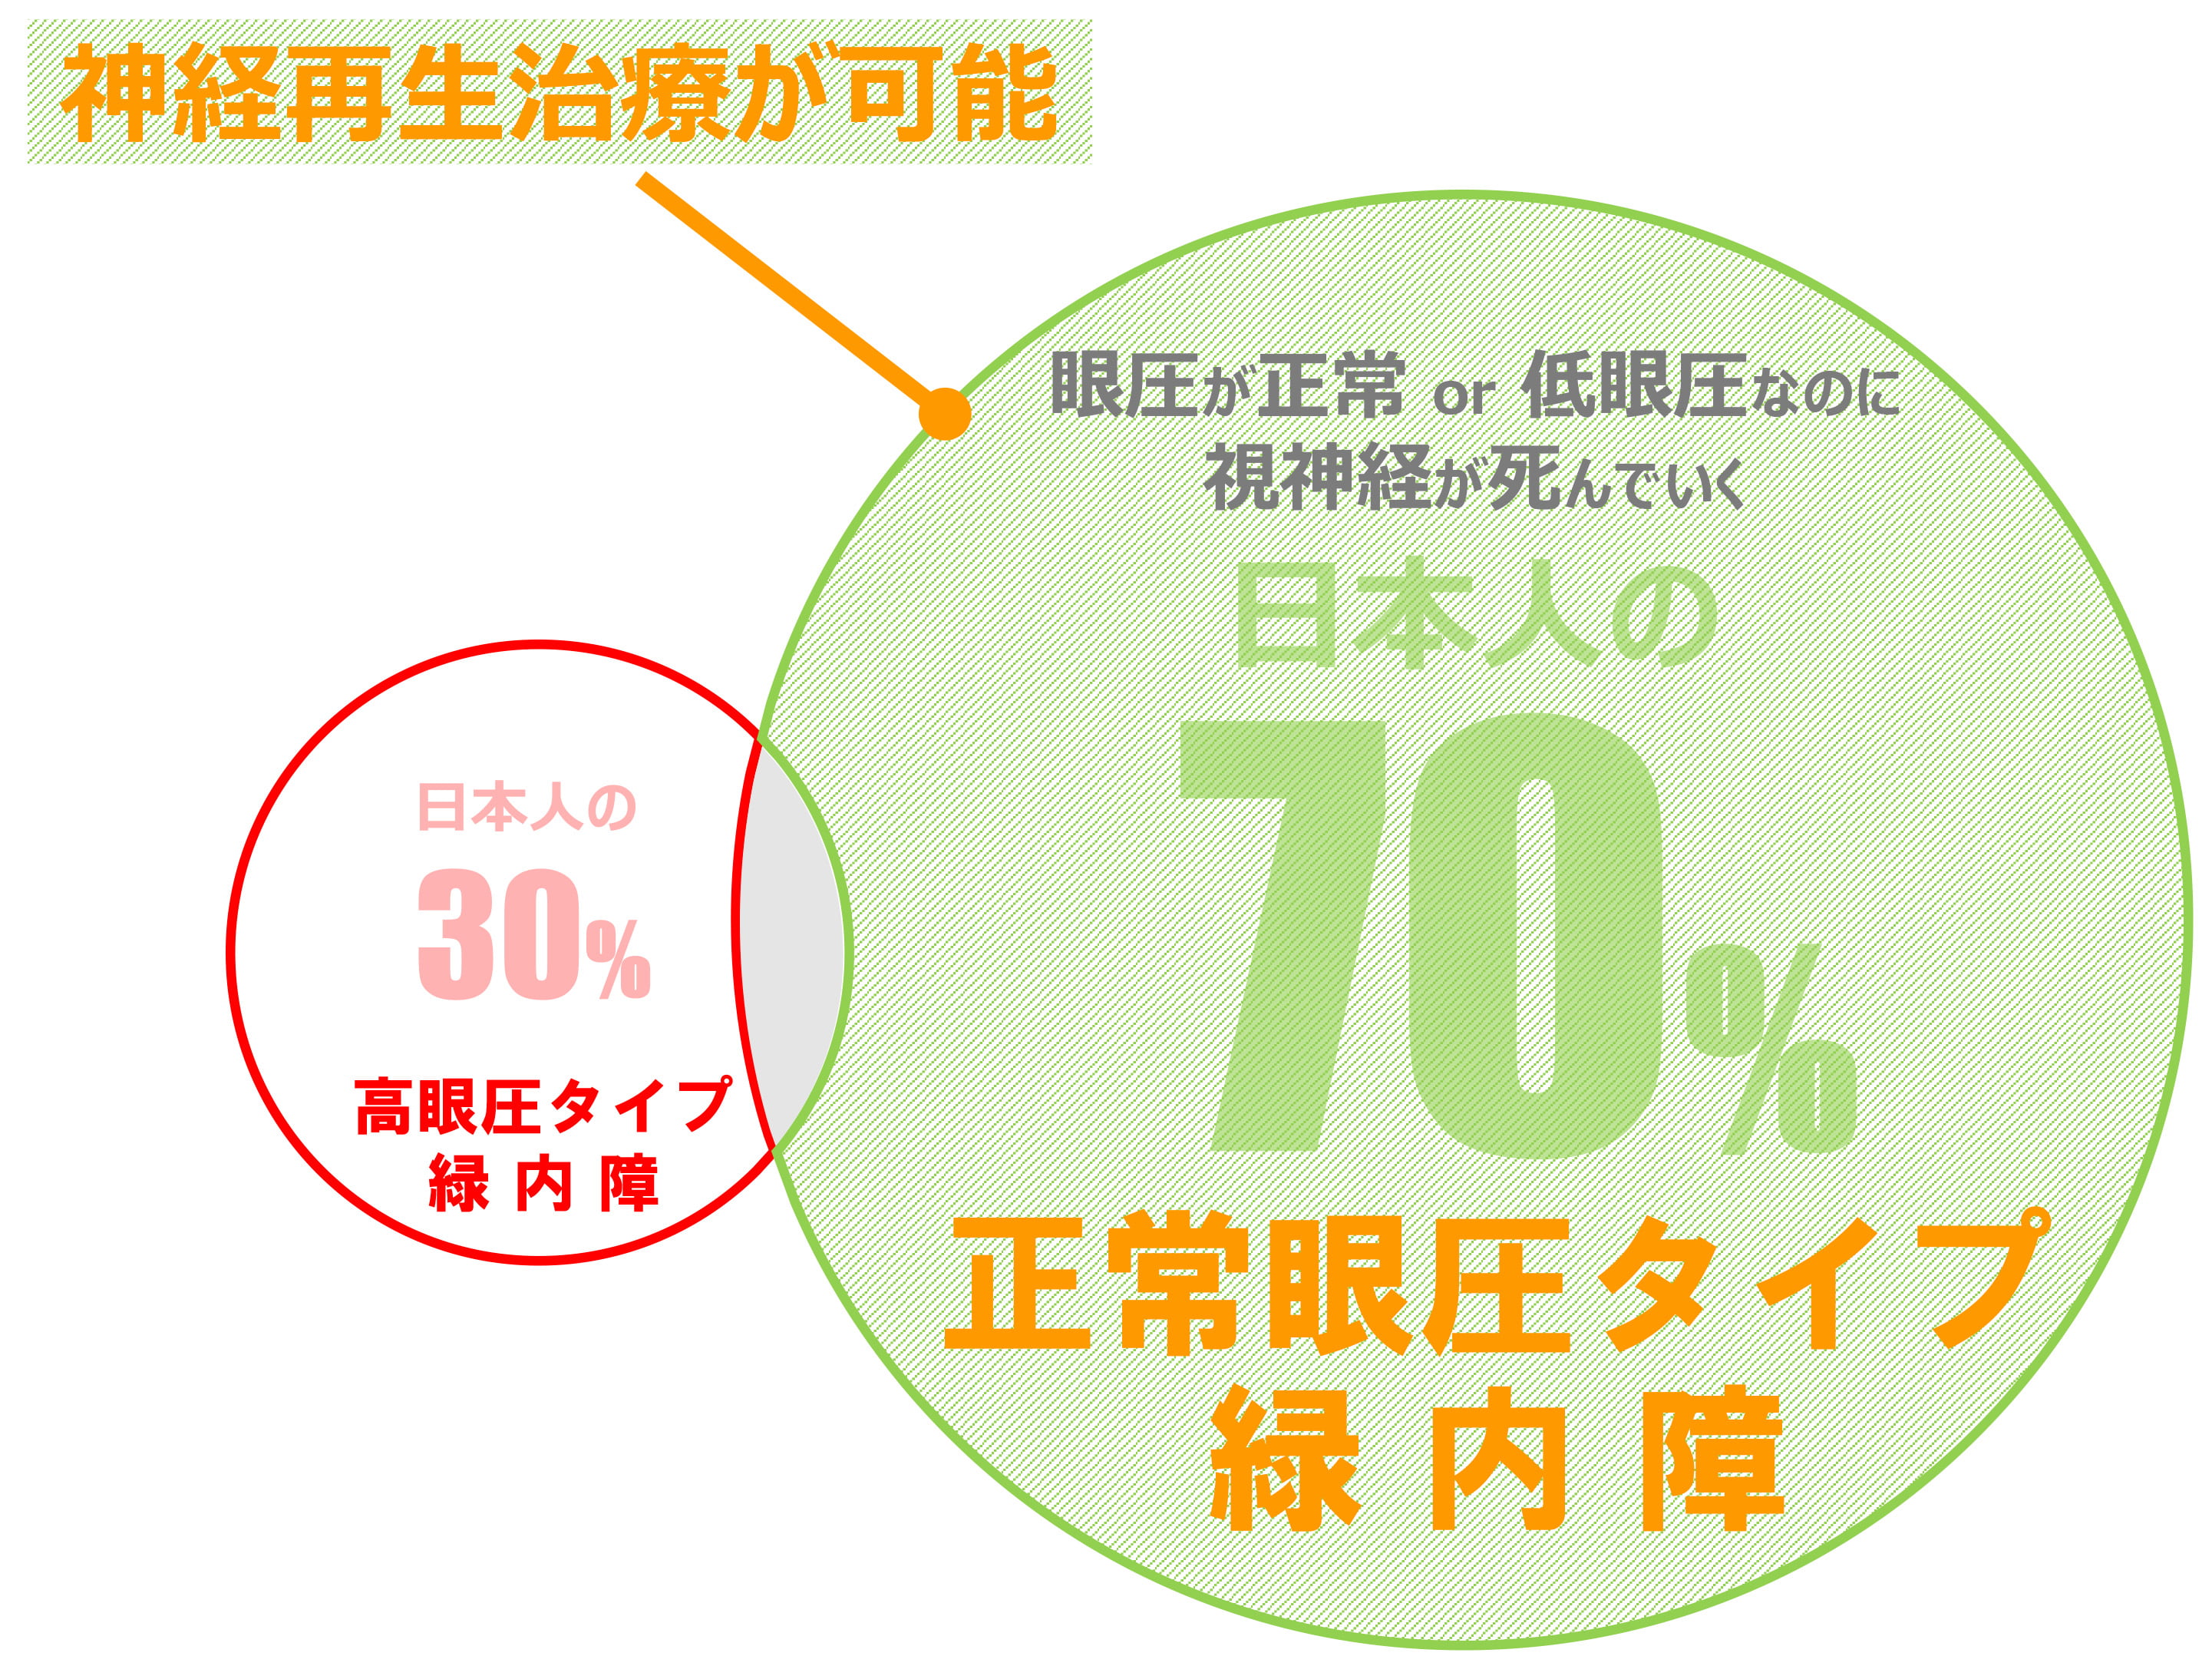 眼圧が正常 or 低眼圧なのに視神経が死んでいく日本人の70%正常眼圧タイプ緑内障 神経再生治療が可能